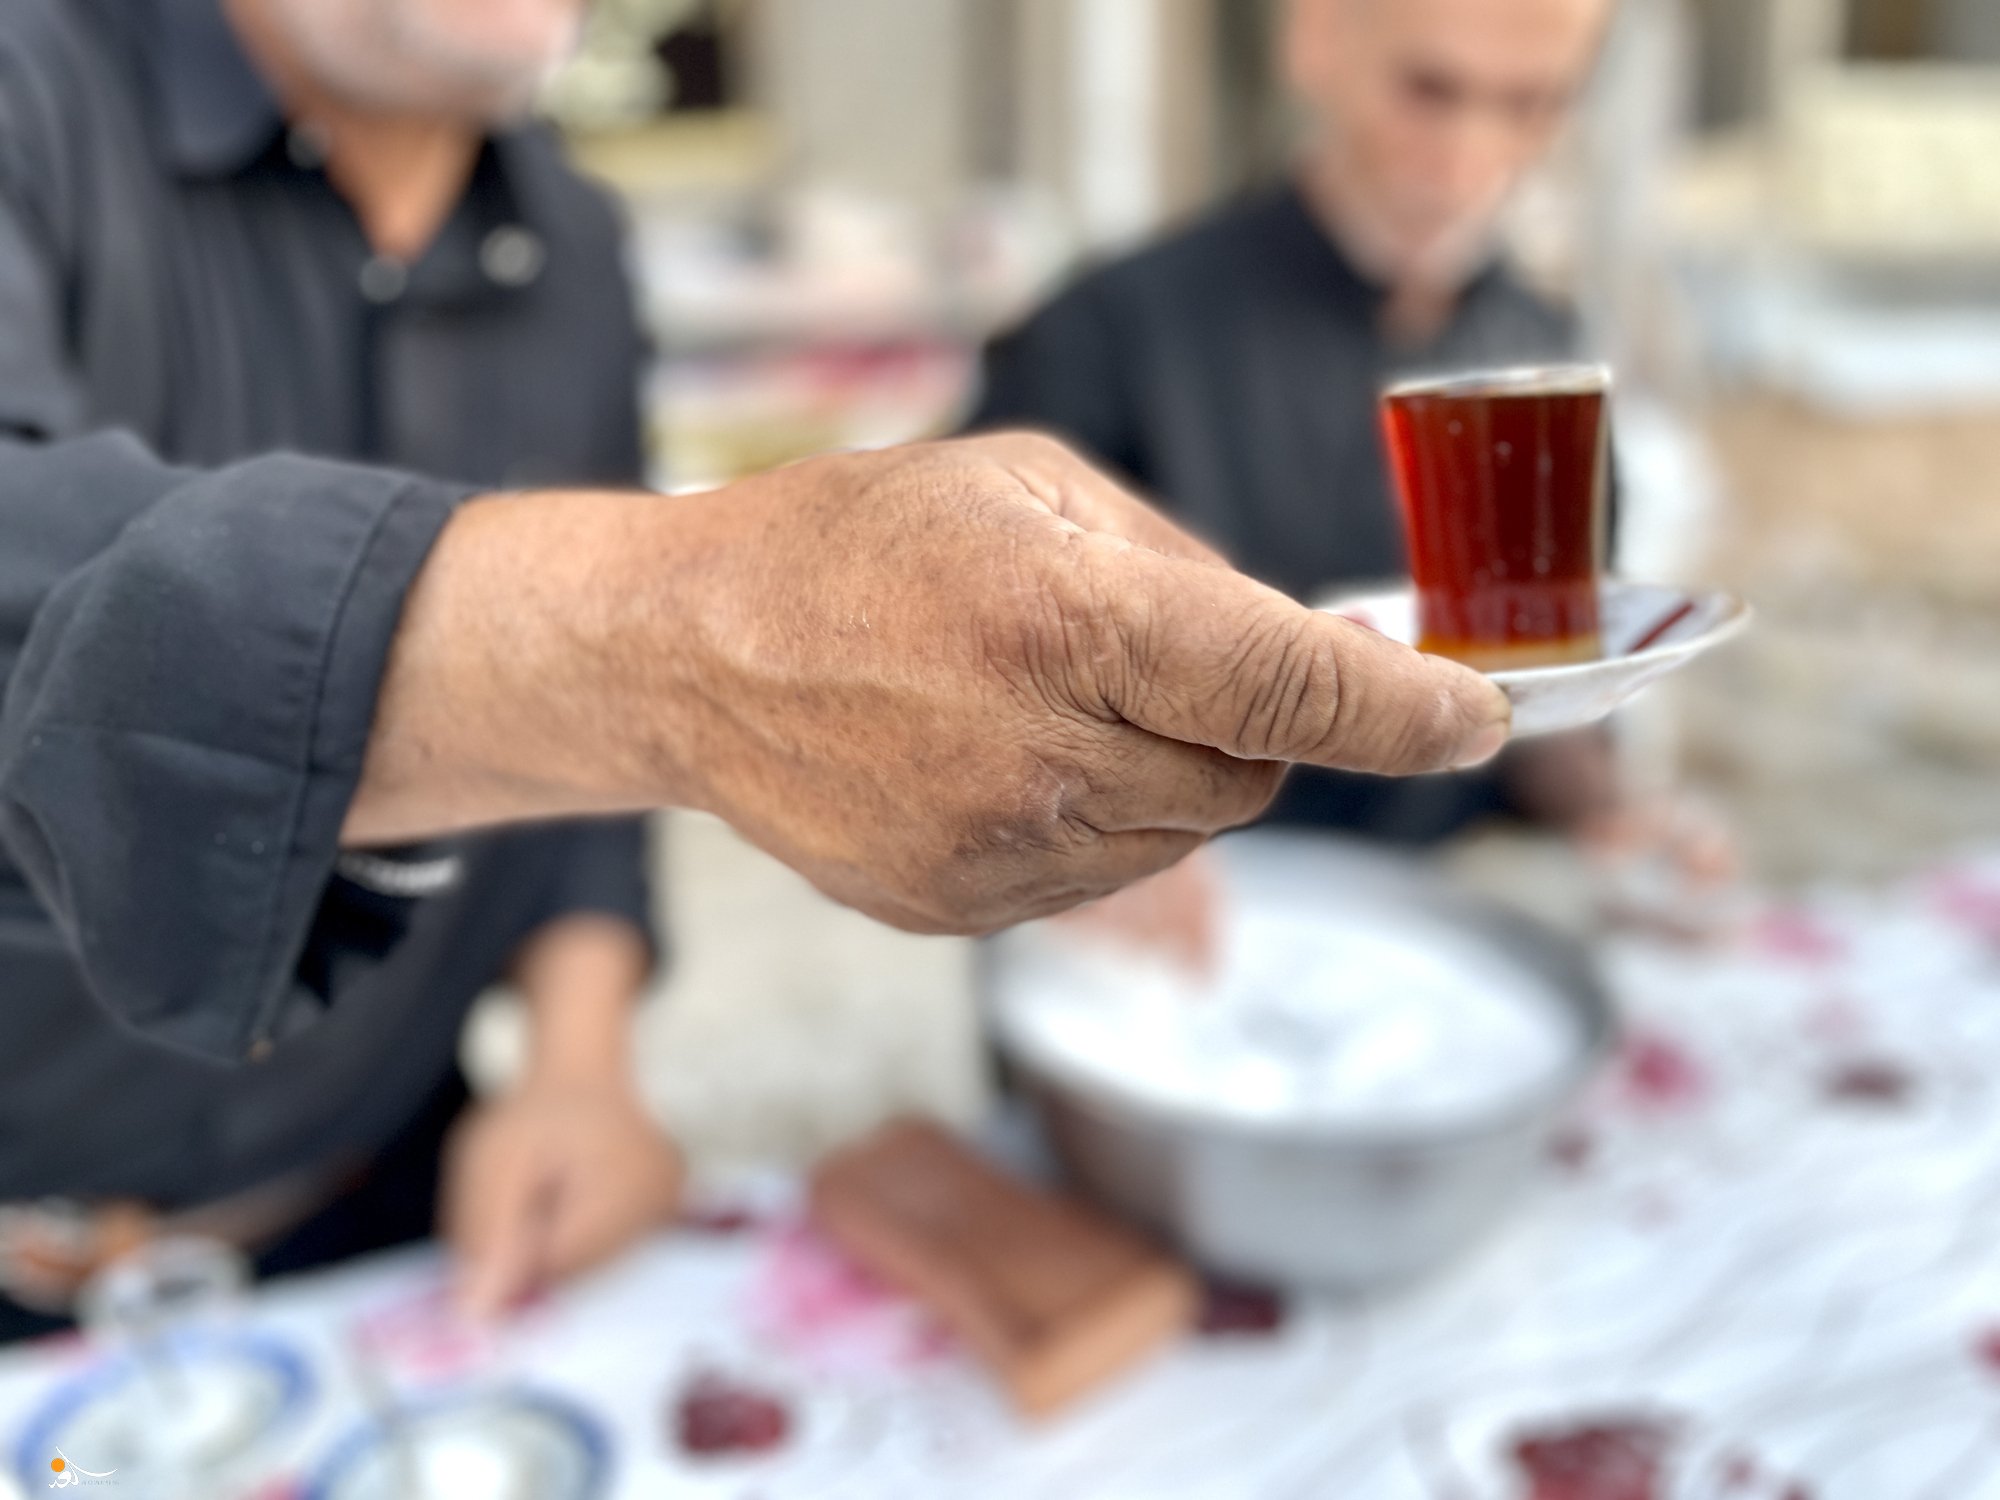 فيديو: اليوم العالمي " للچاي " لماذا يعشق العراقيون "المشروب الاسود" ؟